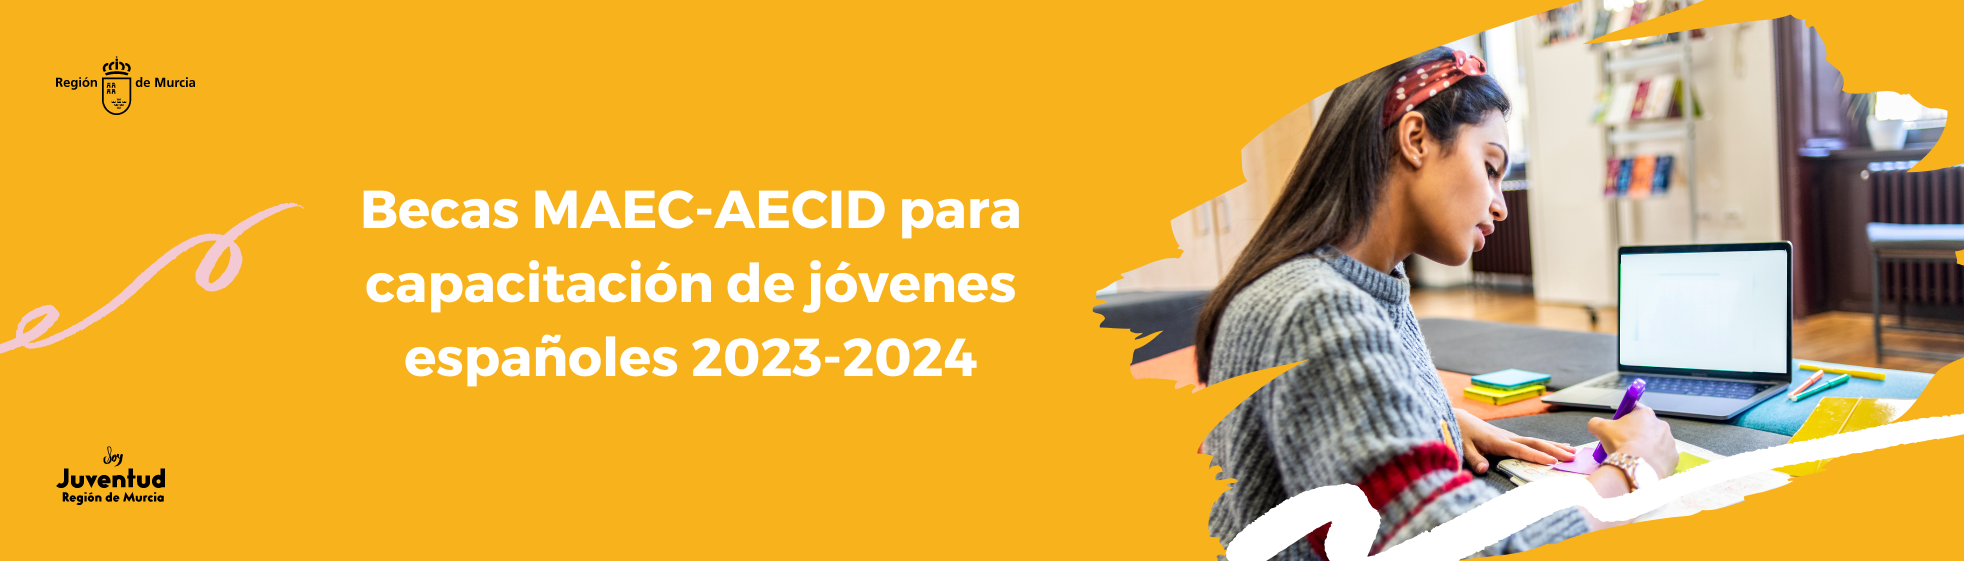 Becas MAEC-AECID para capacitación de jóvenes españoles 2023-2024